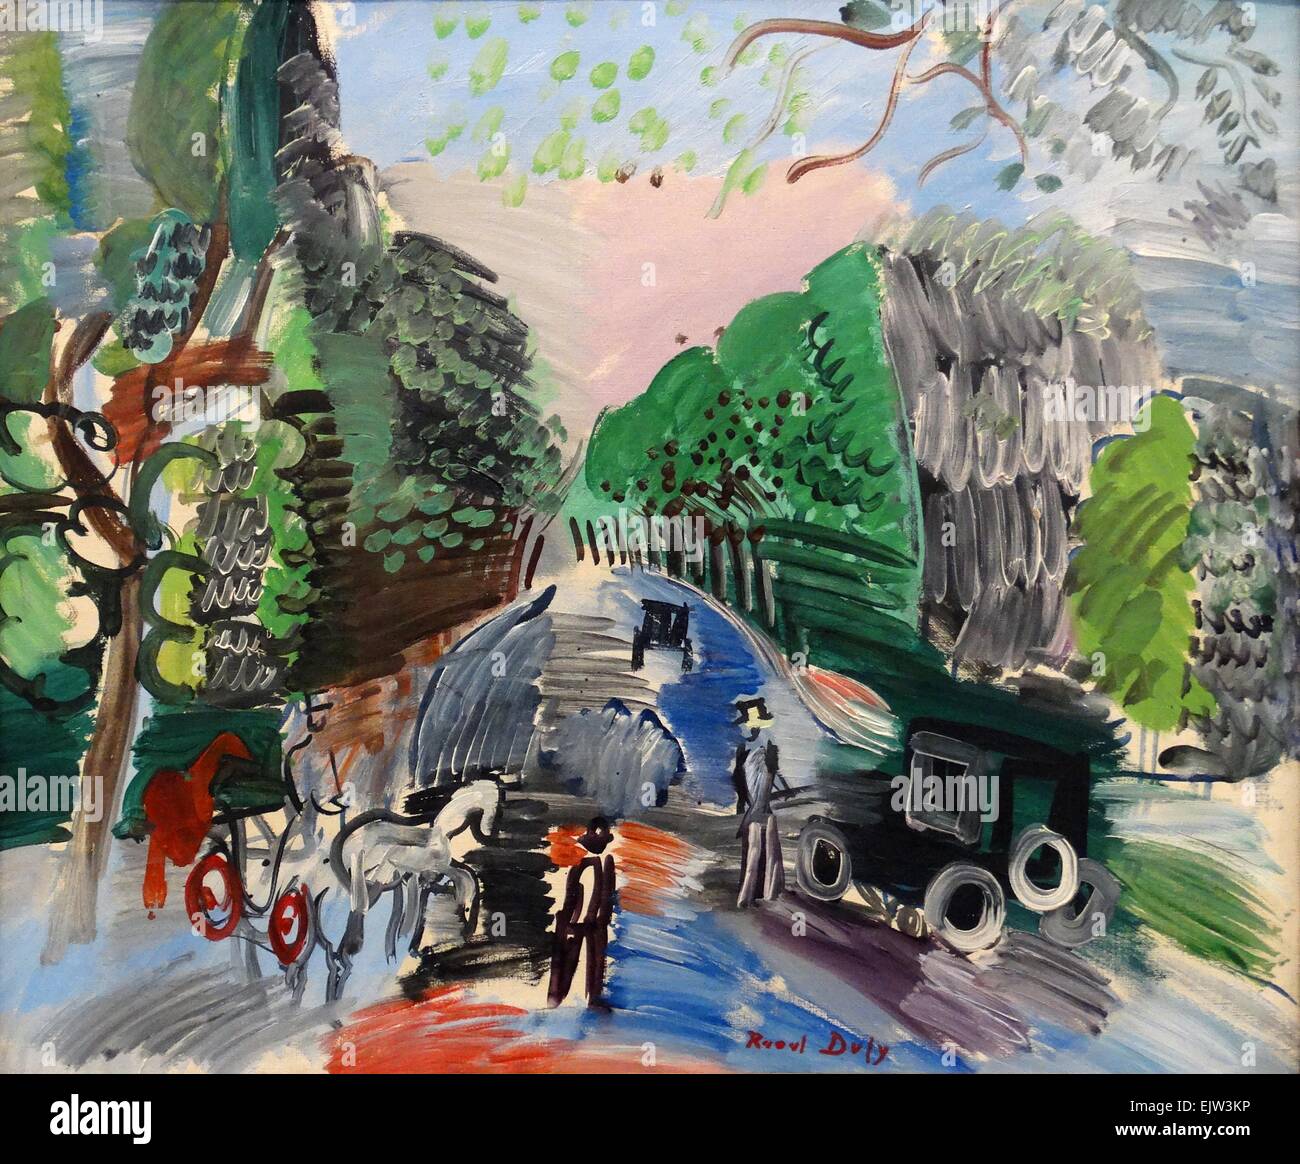 Au bois de Boulogne par Raoul Dufy (1877-1953). Huile sur toile, 1920. Dufy était un peintre fauviste français qui a mis au point un style décoratif coloré, qui est rapidement devenue à la mode. Banque D'Images